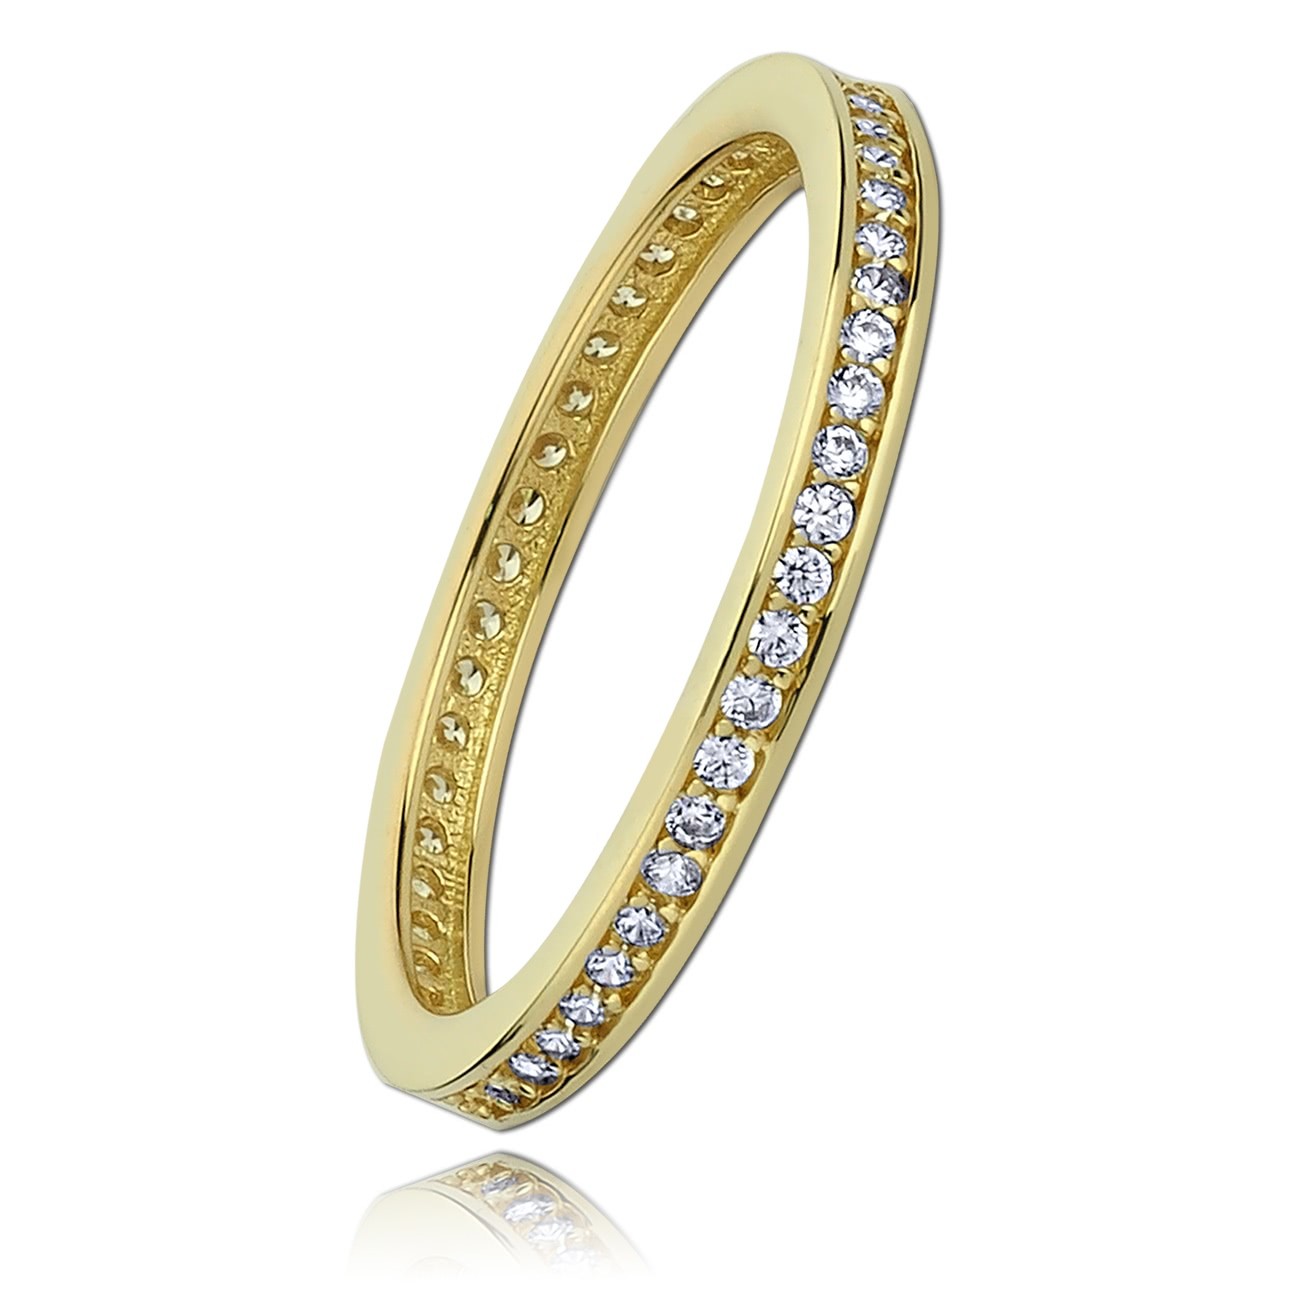 Balia Damen Ring aus 333 Gelbgold mit Zirkonia Gr.54 BGR012G54